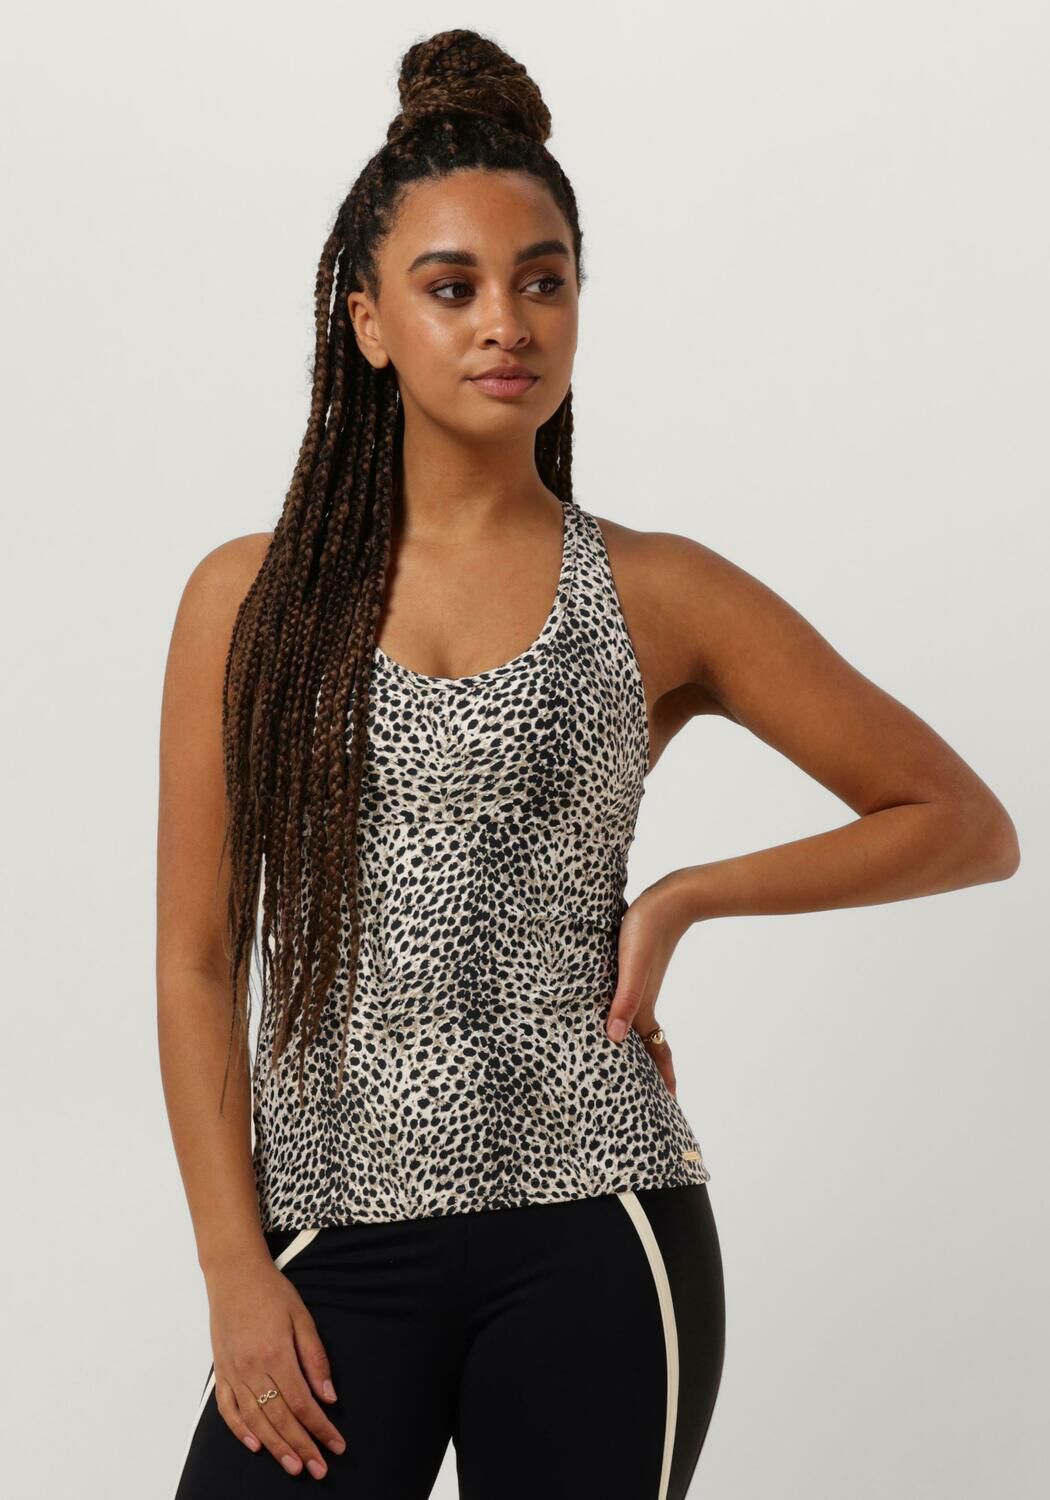 DEBLON SPORTS Dames Tops & T-shirts Zoe Top Leopard